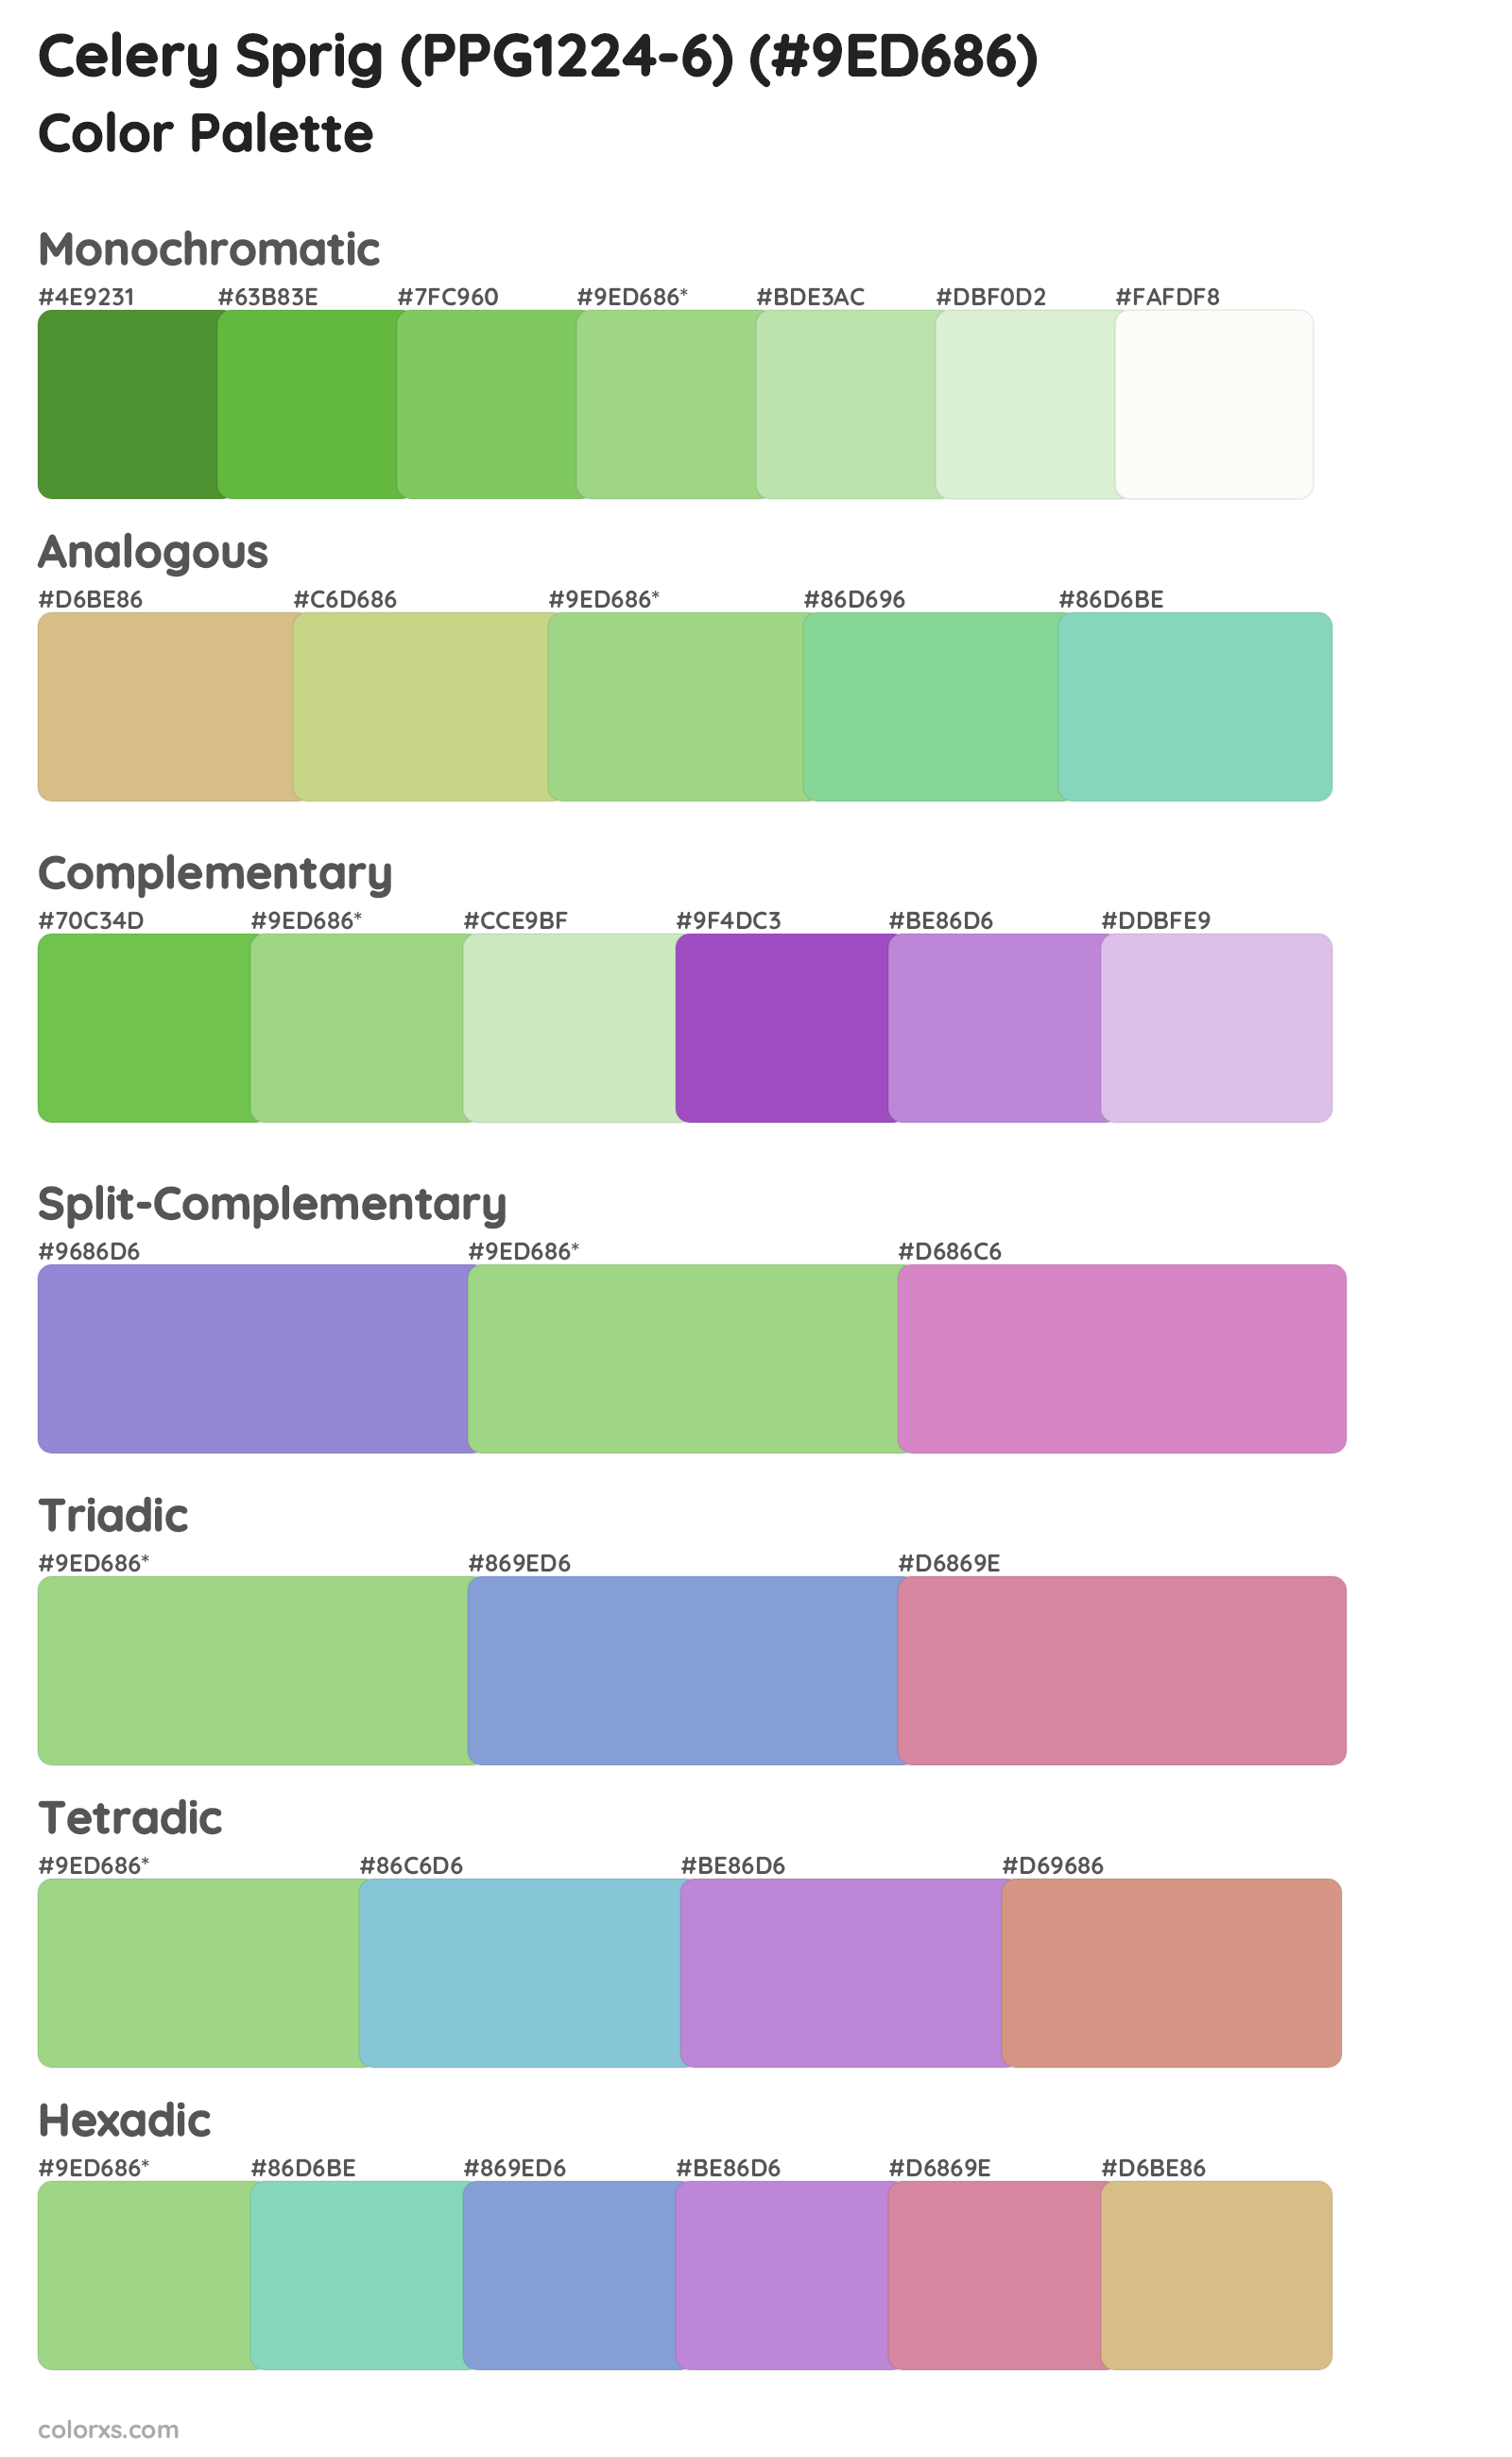 Celery Sprig (PPG1224-6) Color Scheme Palettes